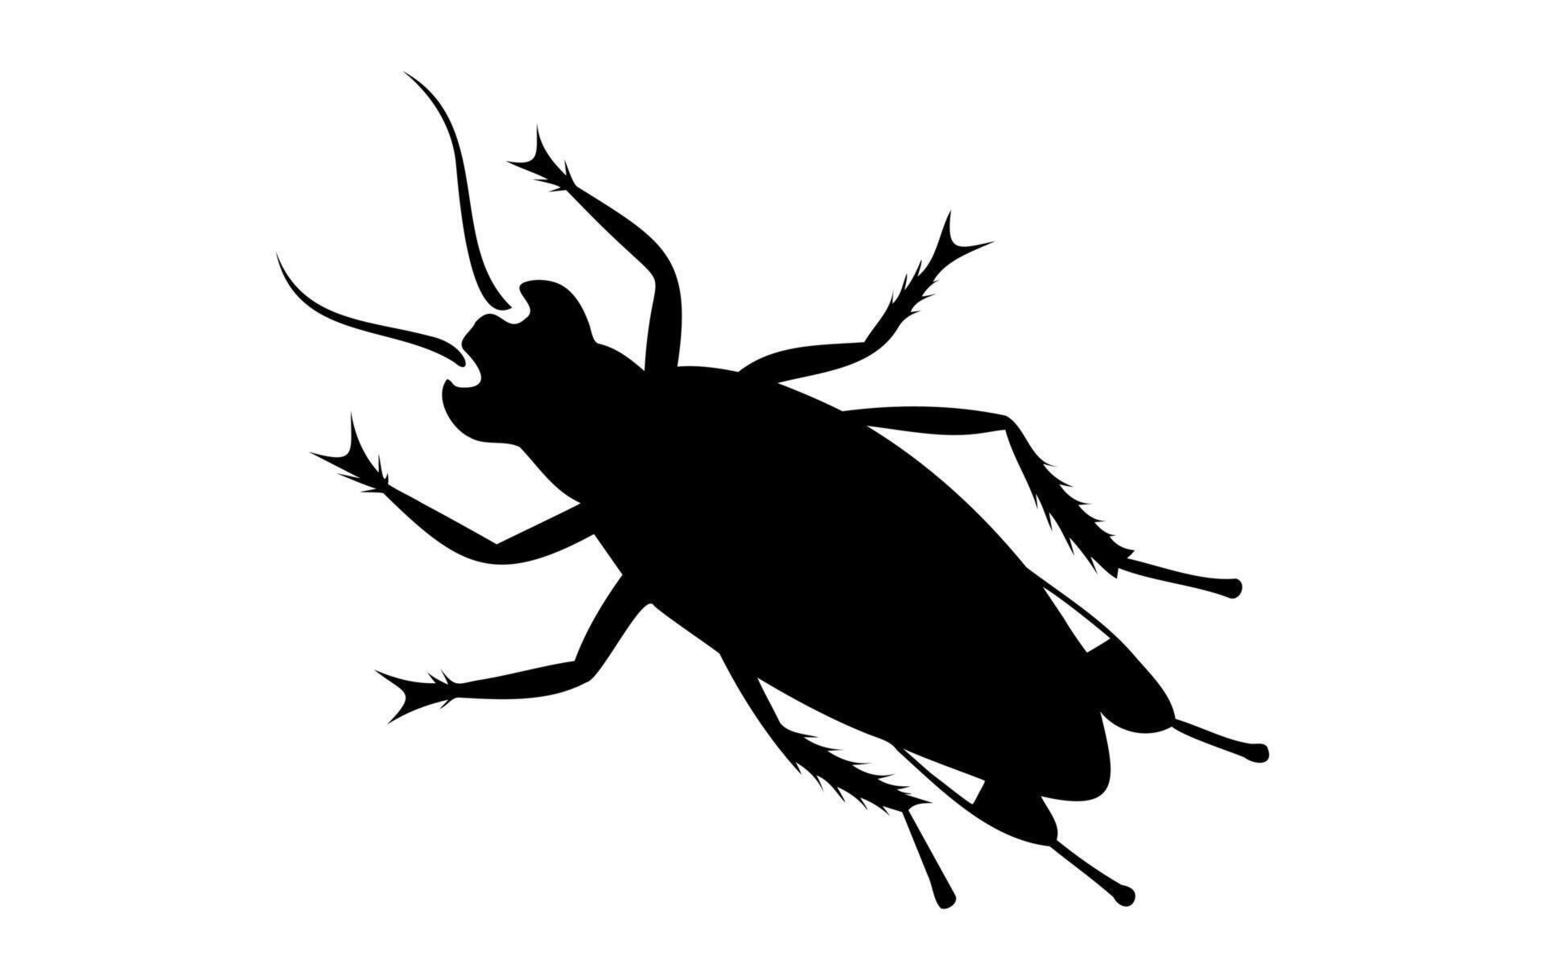 Silhouette von ein Kakerlake isoliert auf Weiß Hintergrund. schwarz Kakerlake Illustration. Konzept von Pest Kontrolle, Befall, und Zuhause Hygiene. zum Design, drucken und lehrreich Material. vektor